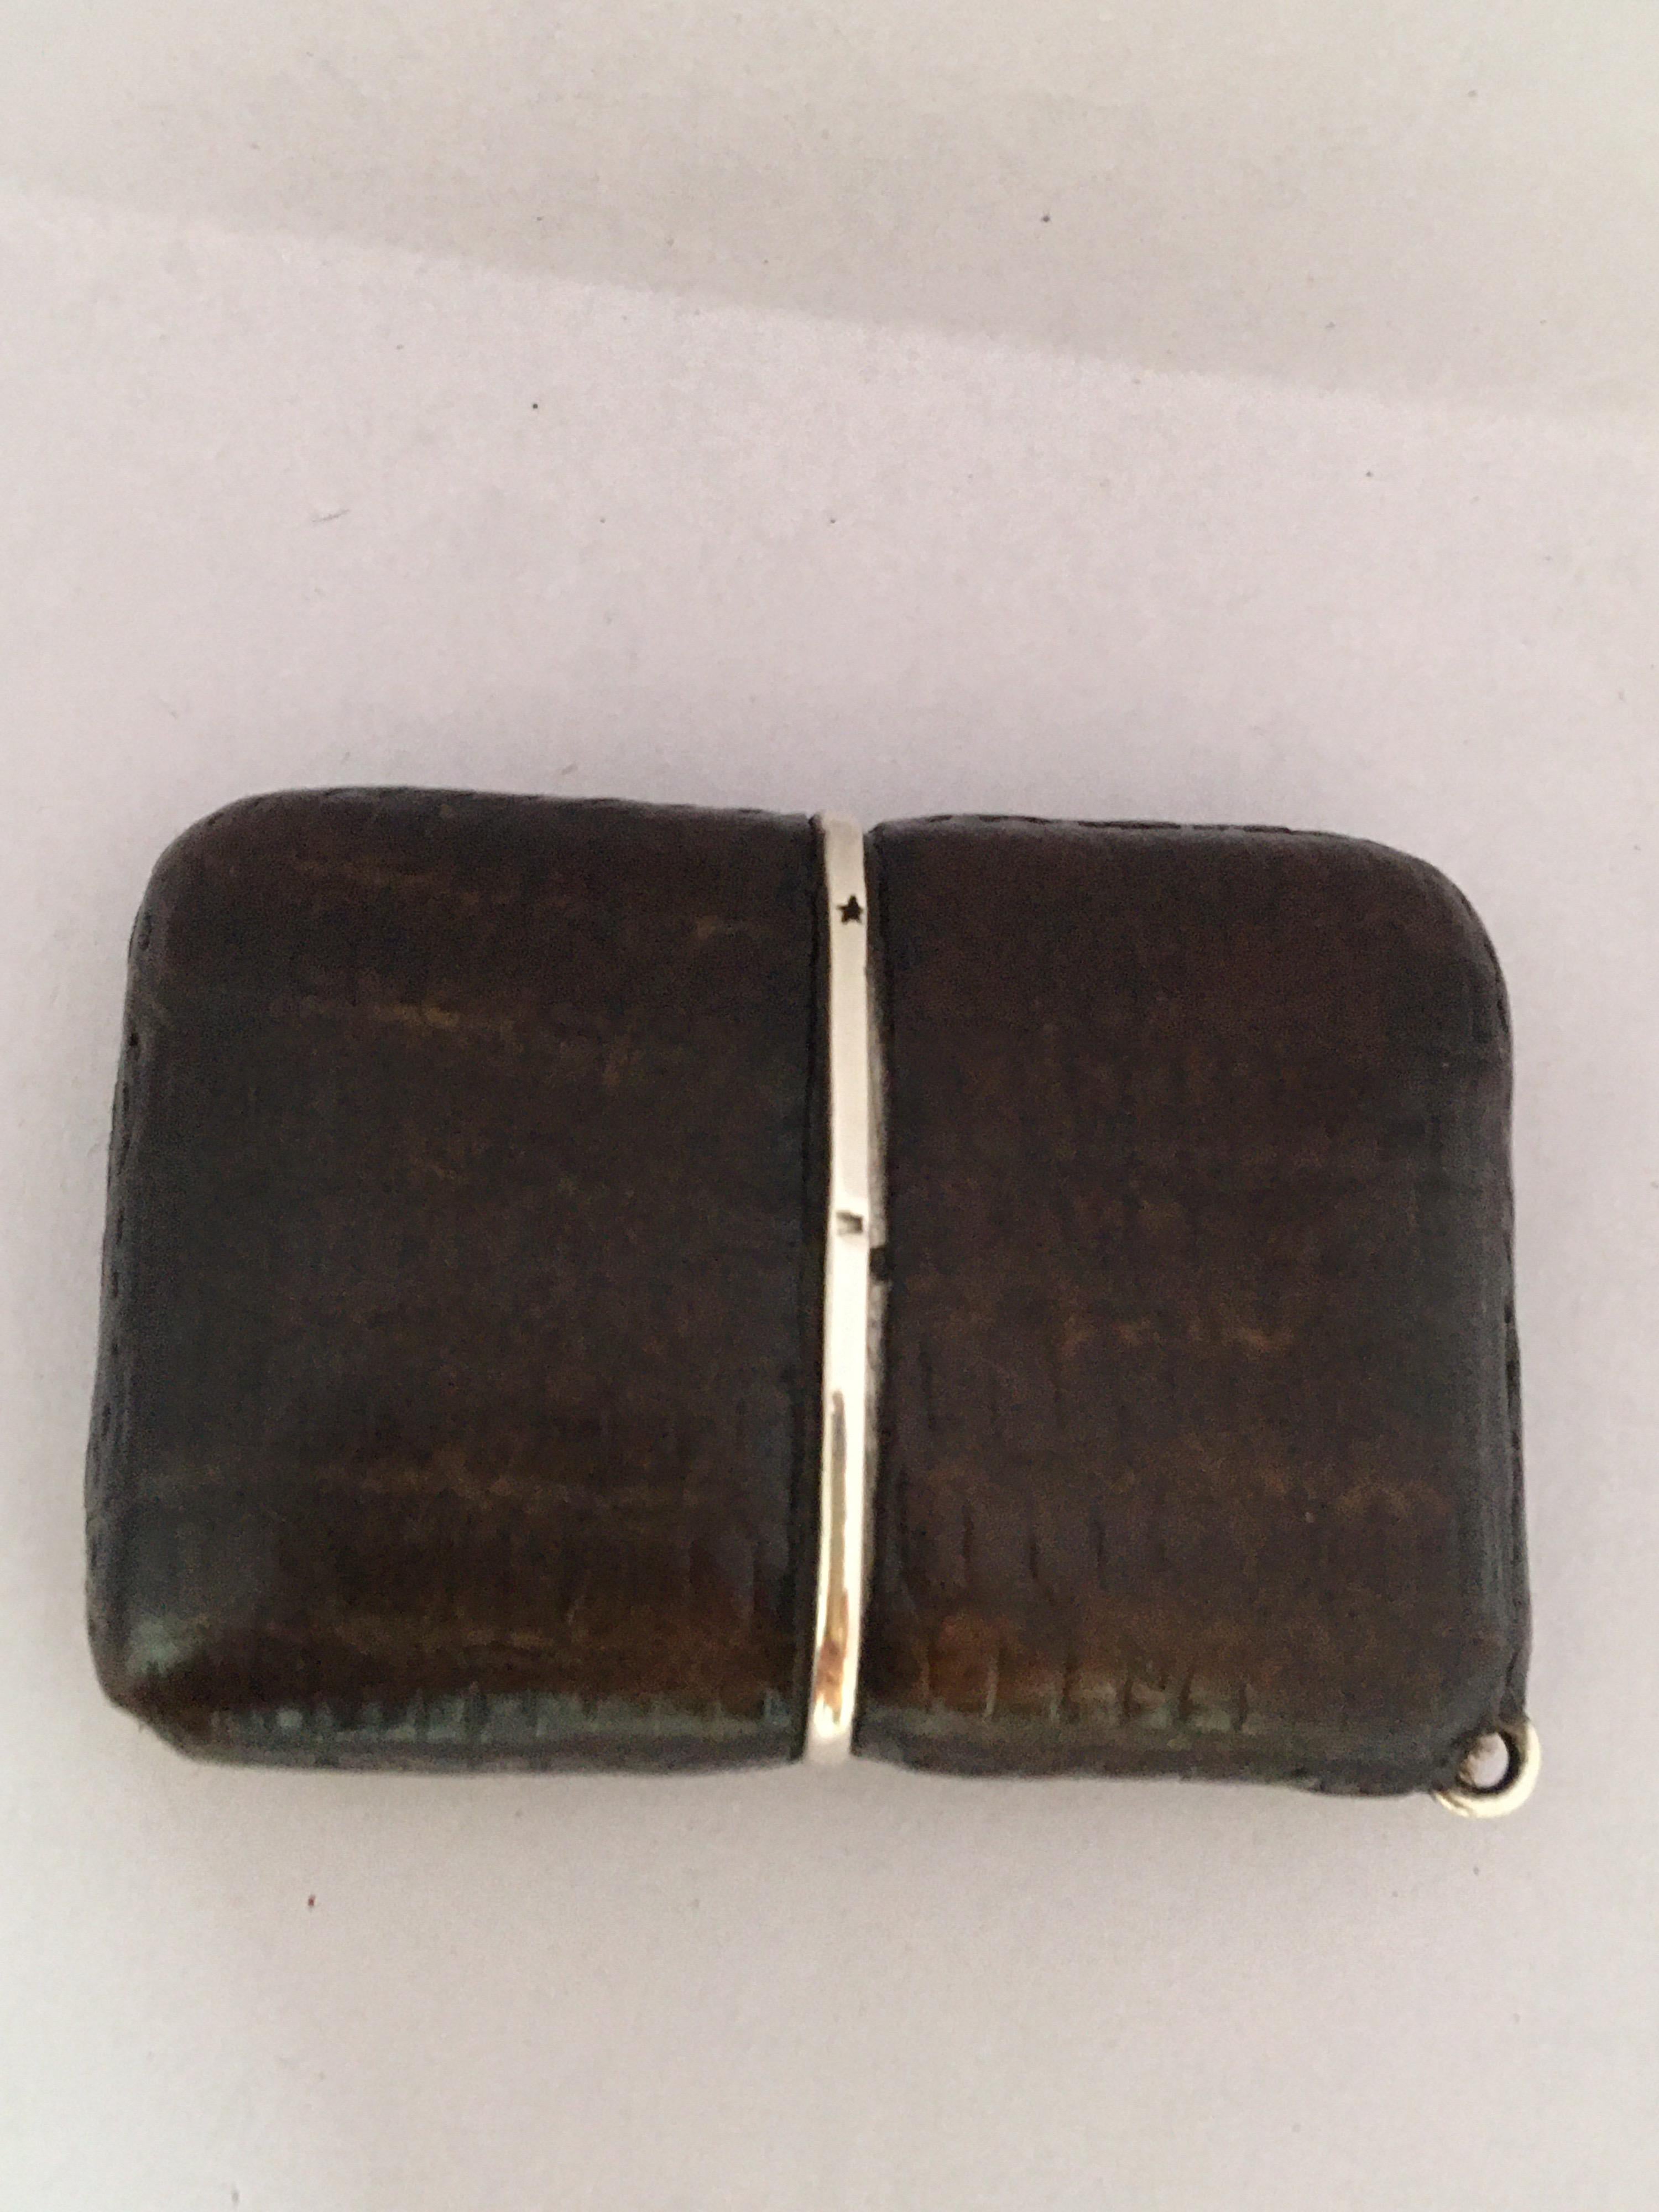 Movado Ermeto Chronométre aus Silber (0.935) und Leder, Importpunzen London 1927, signiertes quadratisches versilbertes Zifferblatt mit arabischen Ziffern, Minutenanzeige und gebläuten Stahlzeigern, verso bezeichnet 'Patent', braunes ledergebundenes